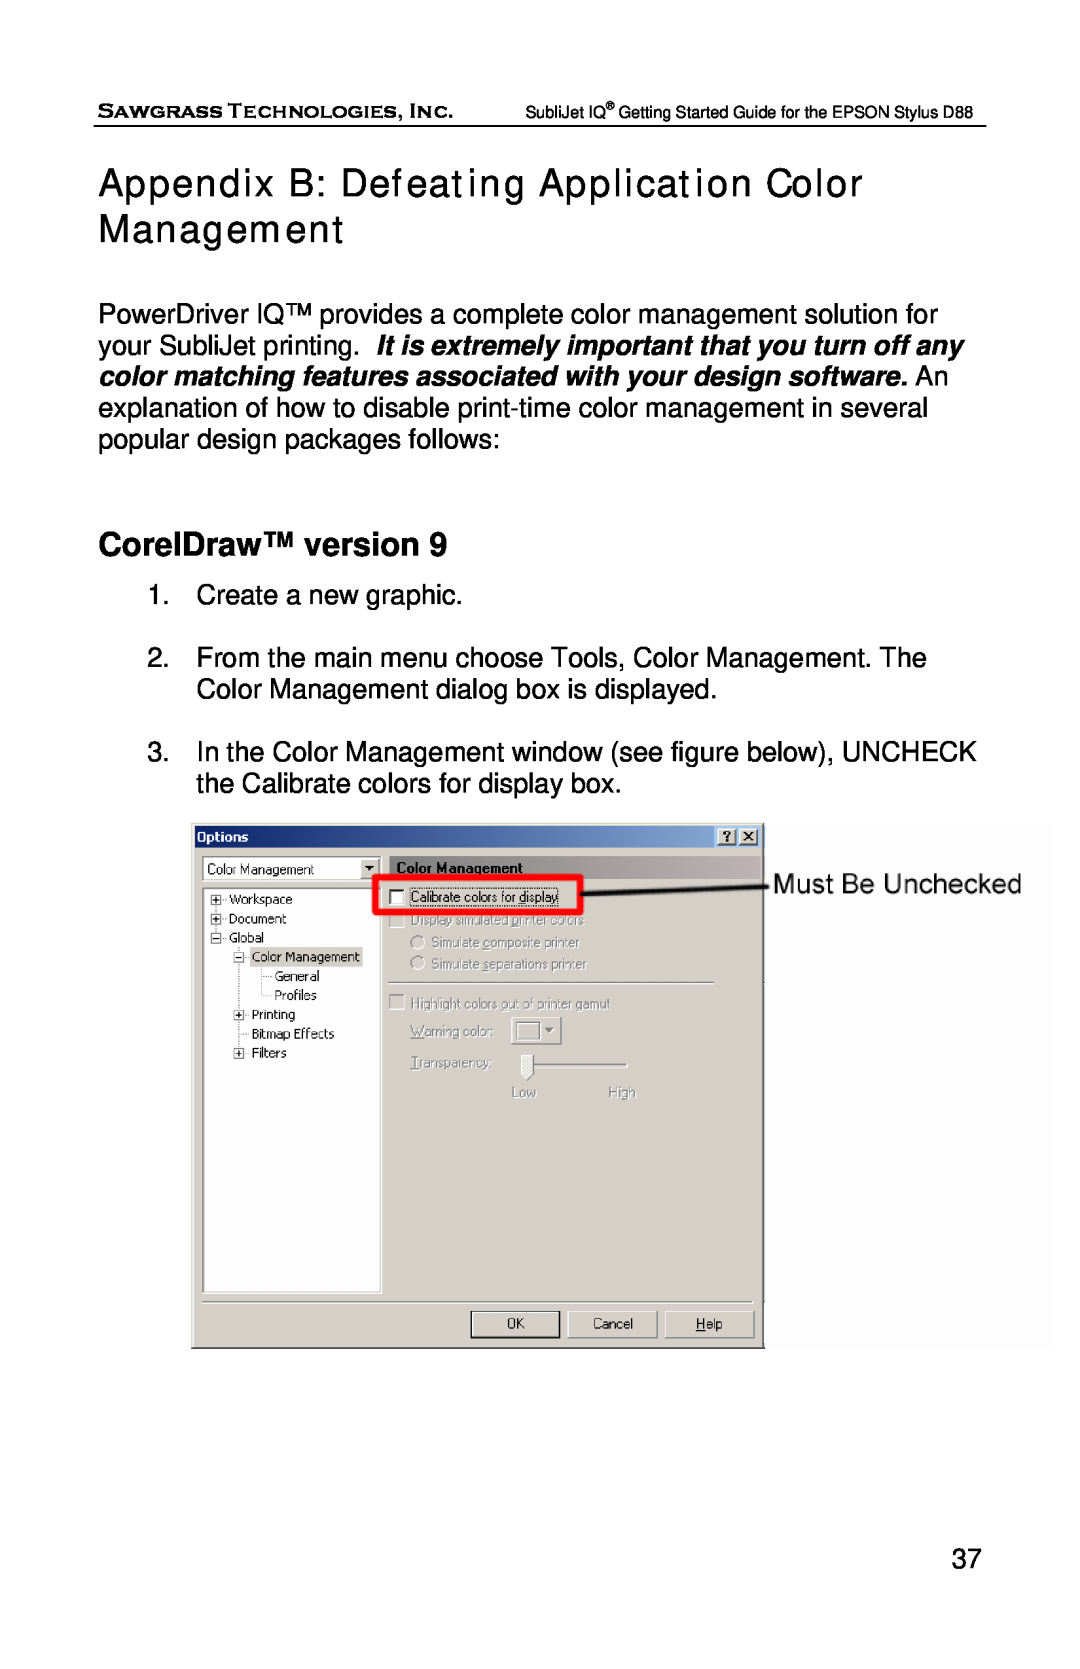 Epson D88 manual Appendix B Defeating Application Color Management, CorelDraw version 